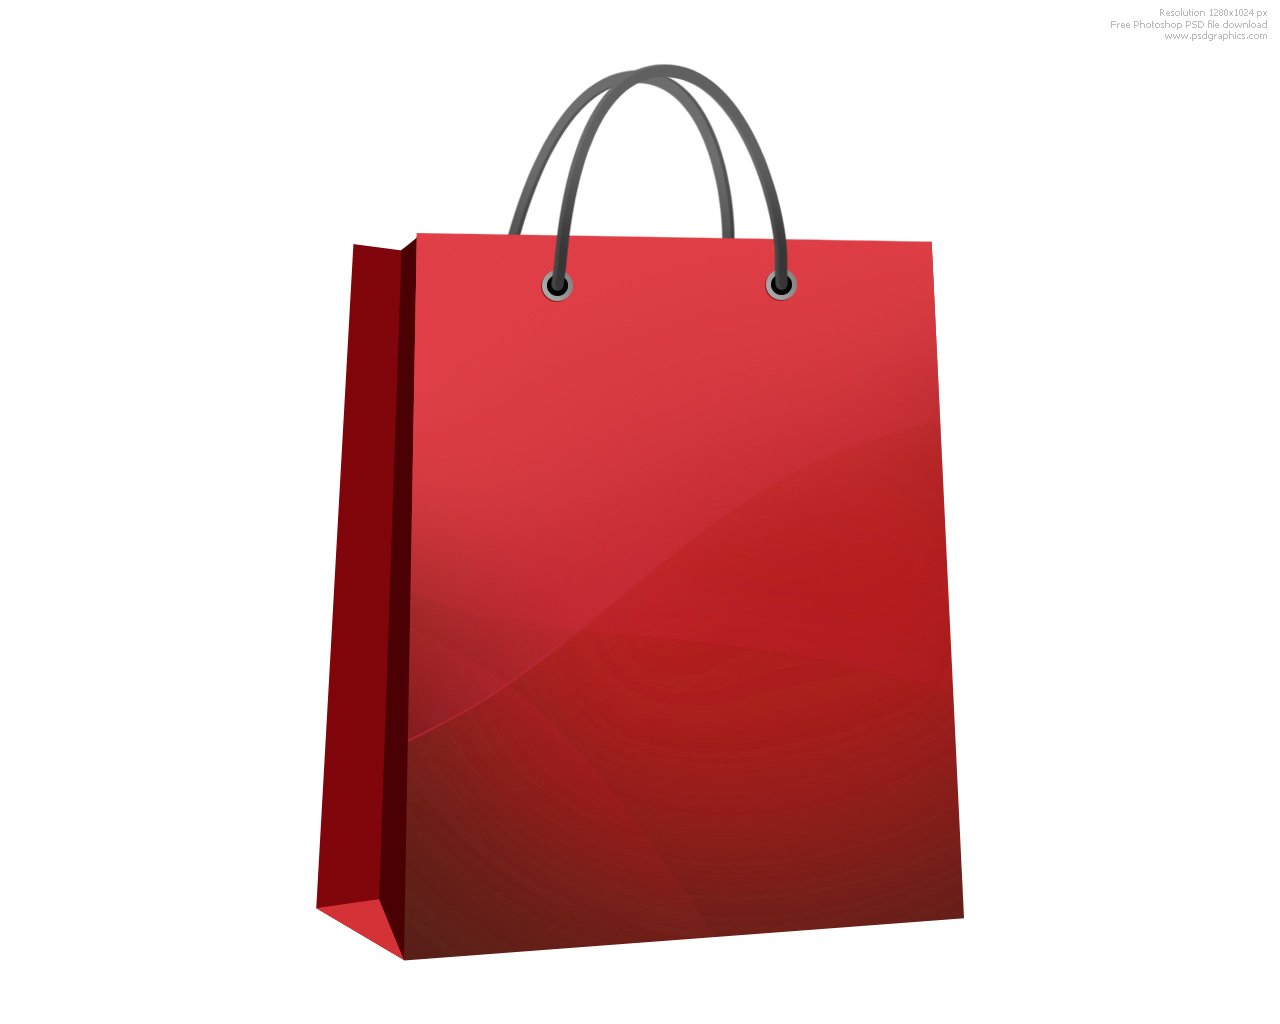 Shopping bag icon : d